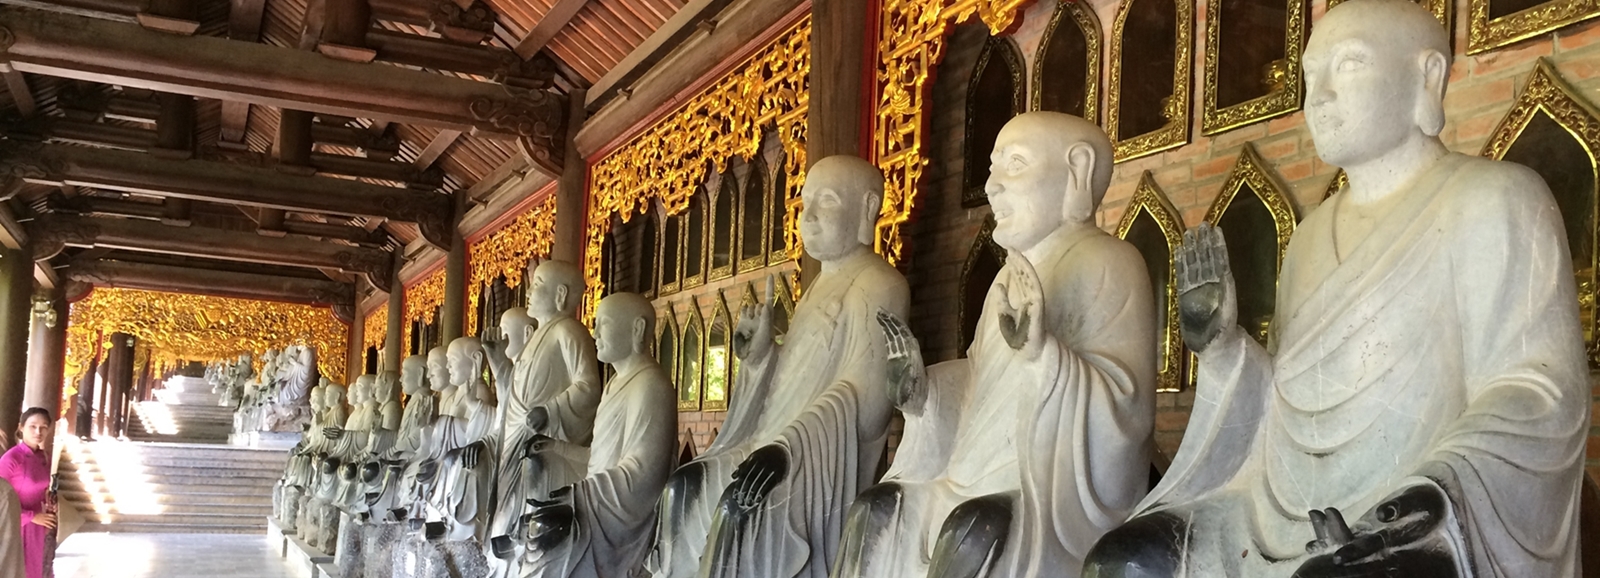 Bai Dinh Pagoda - Trang An 1 Day Tour